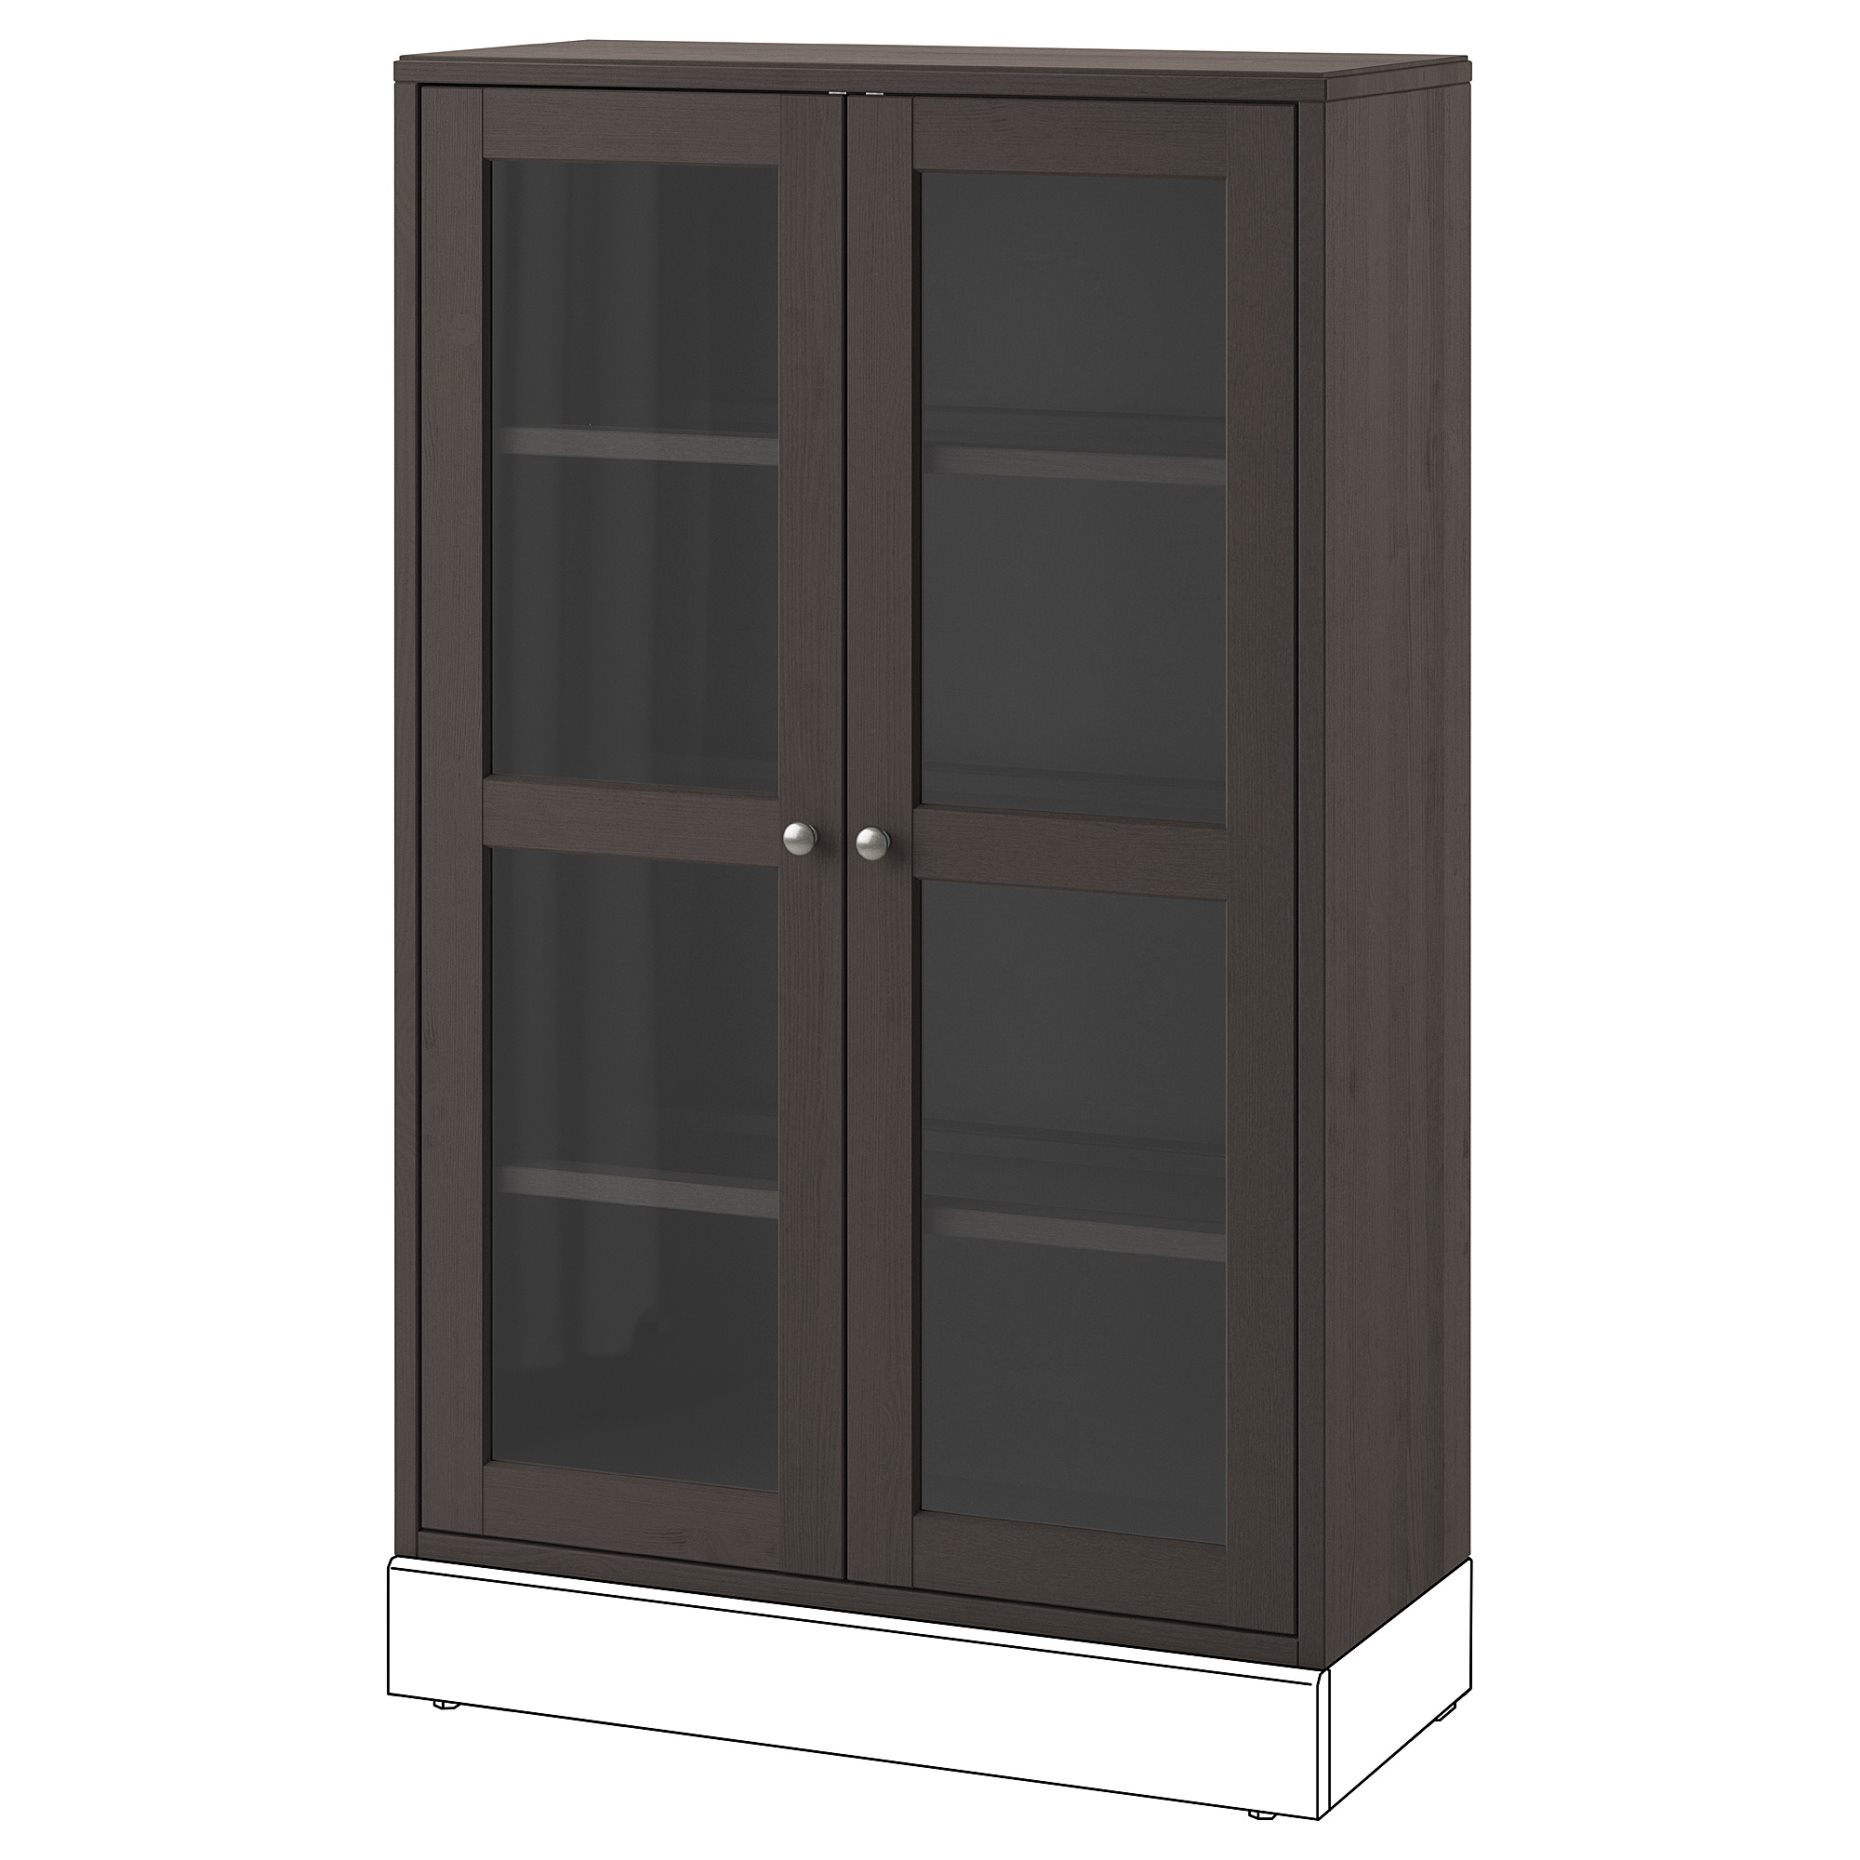 HAVSTA, glass-door cabinet, 303.910.59